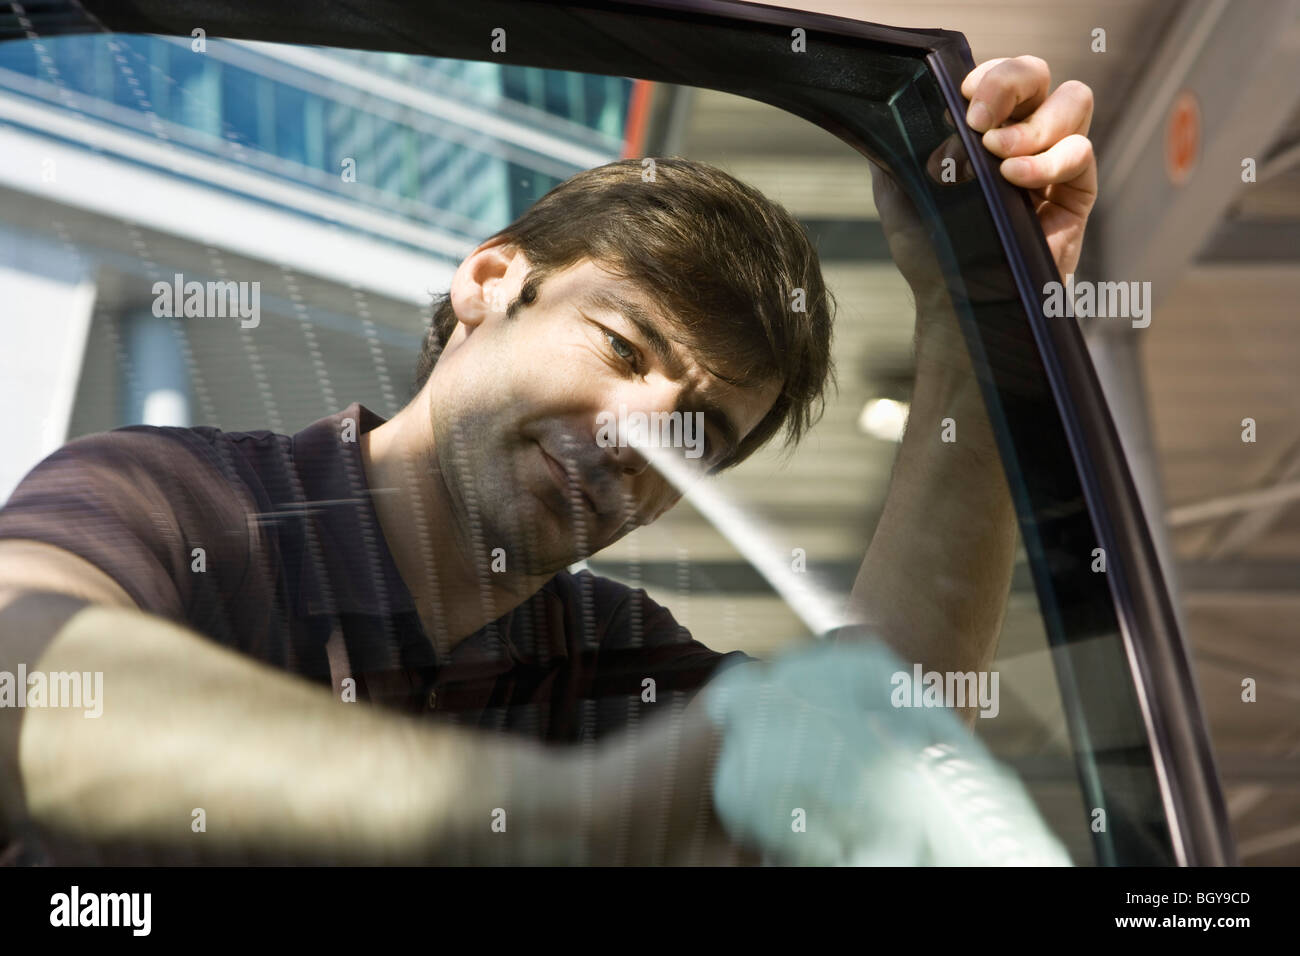 Man cleaning car door window Stock Photo